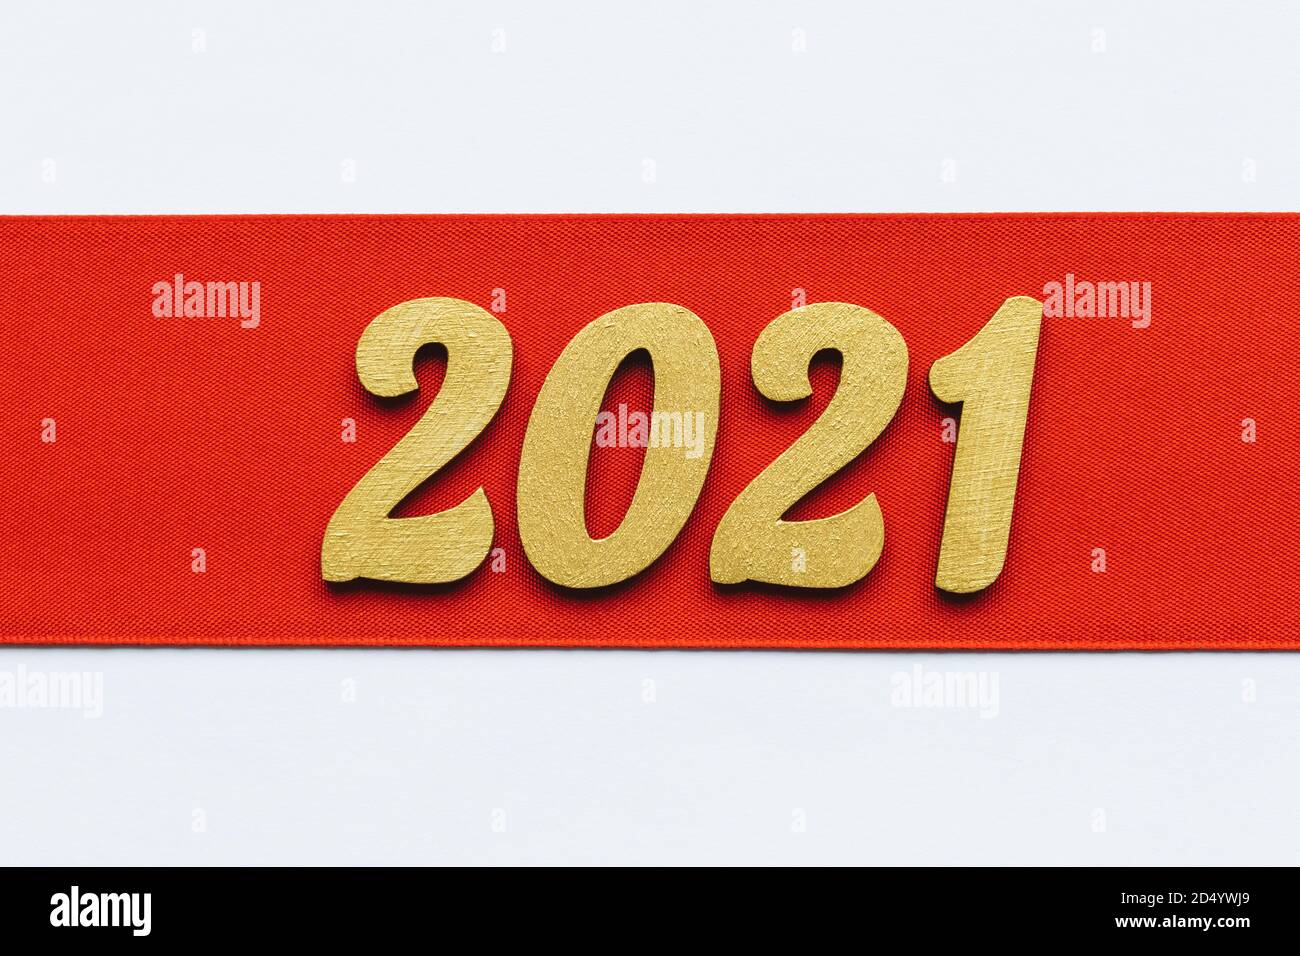 Fond festif. Ruban rouge avec affiche dorée du nouvel an 2021. Bannière de fête des fêtes d'hiver. Joyeux Noël et Bonne Année. Espace pour le texte. Banque D'Images